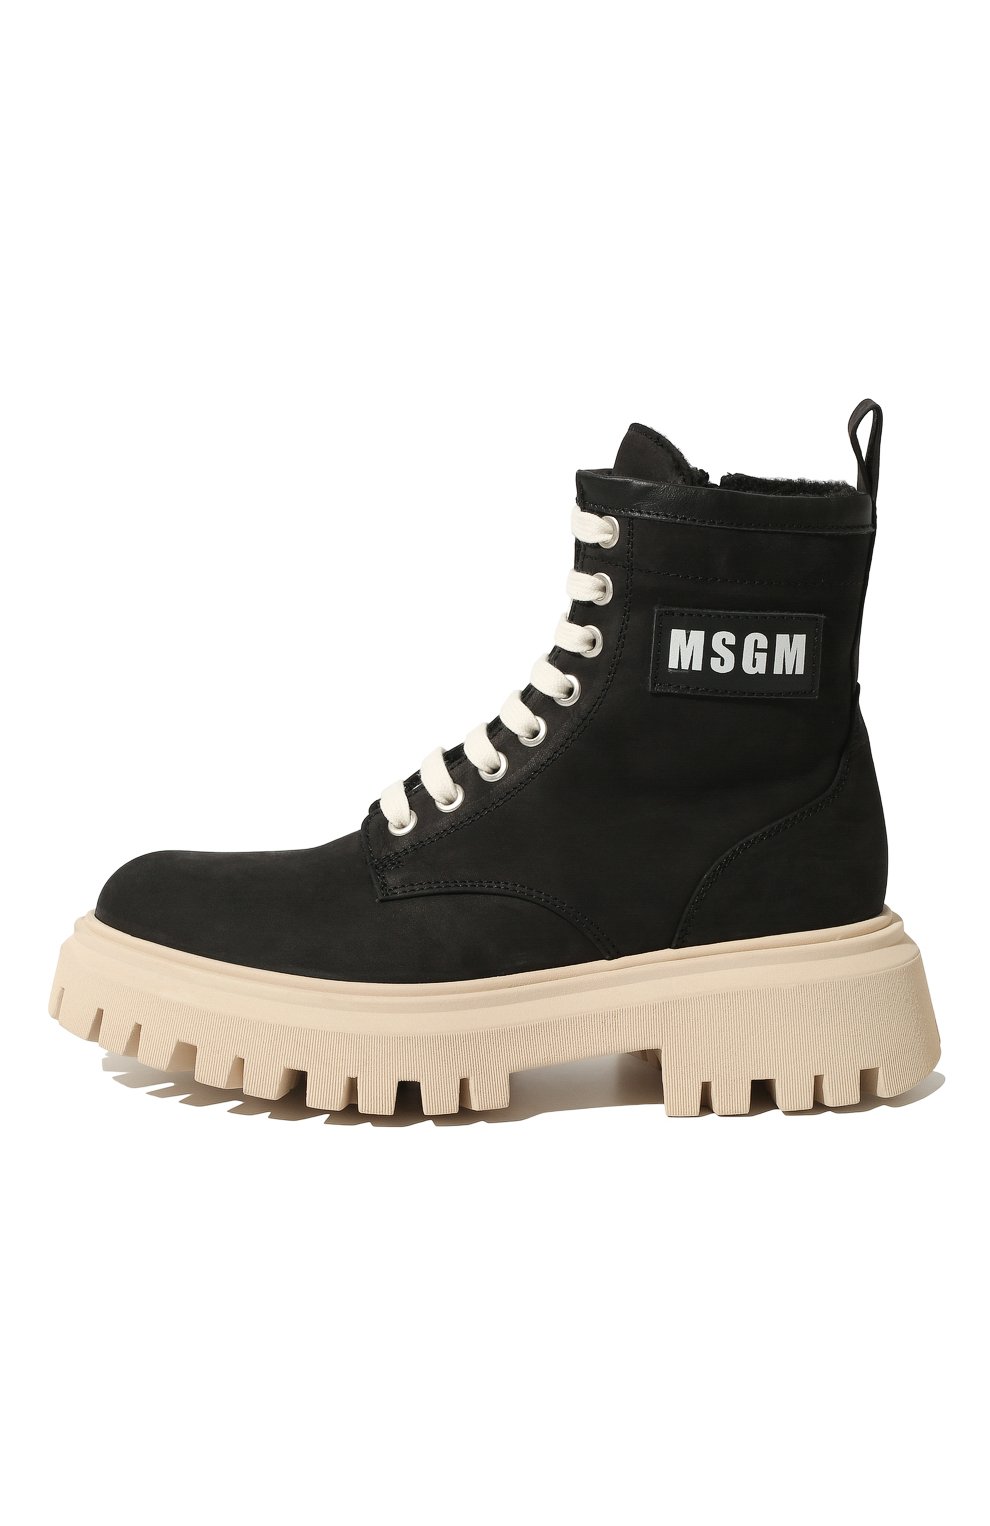 Детские кожаные ботинки MSGM KIDS черного цвета, арт. 72550 VAR.1/36-41 | Фото 2 (Материал внутренний: Текстиль)